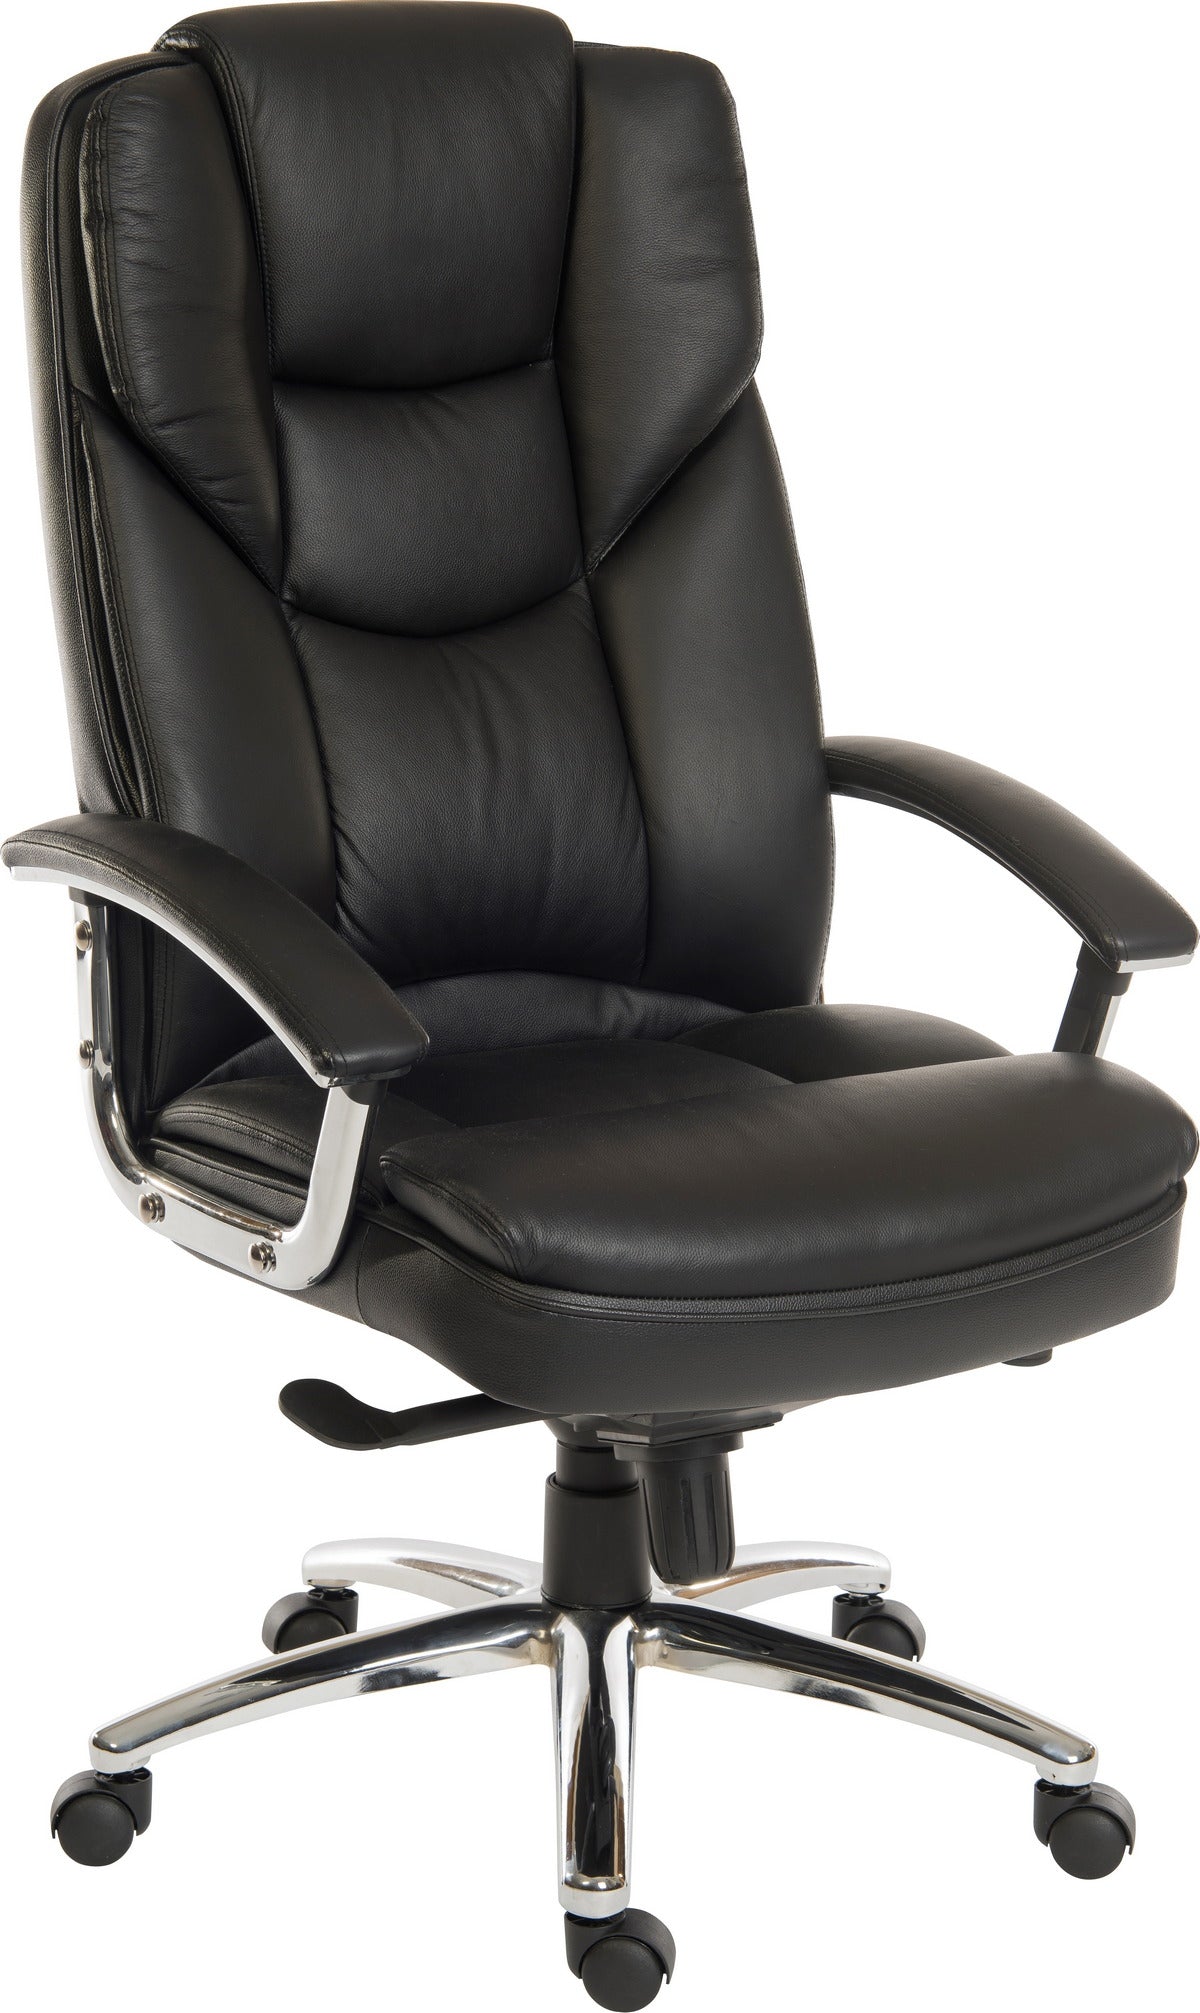 Italian Leather Faced Executive Chair - SKYLINE UK